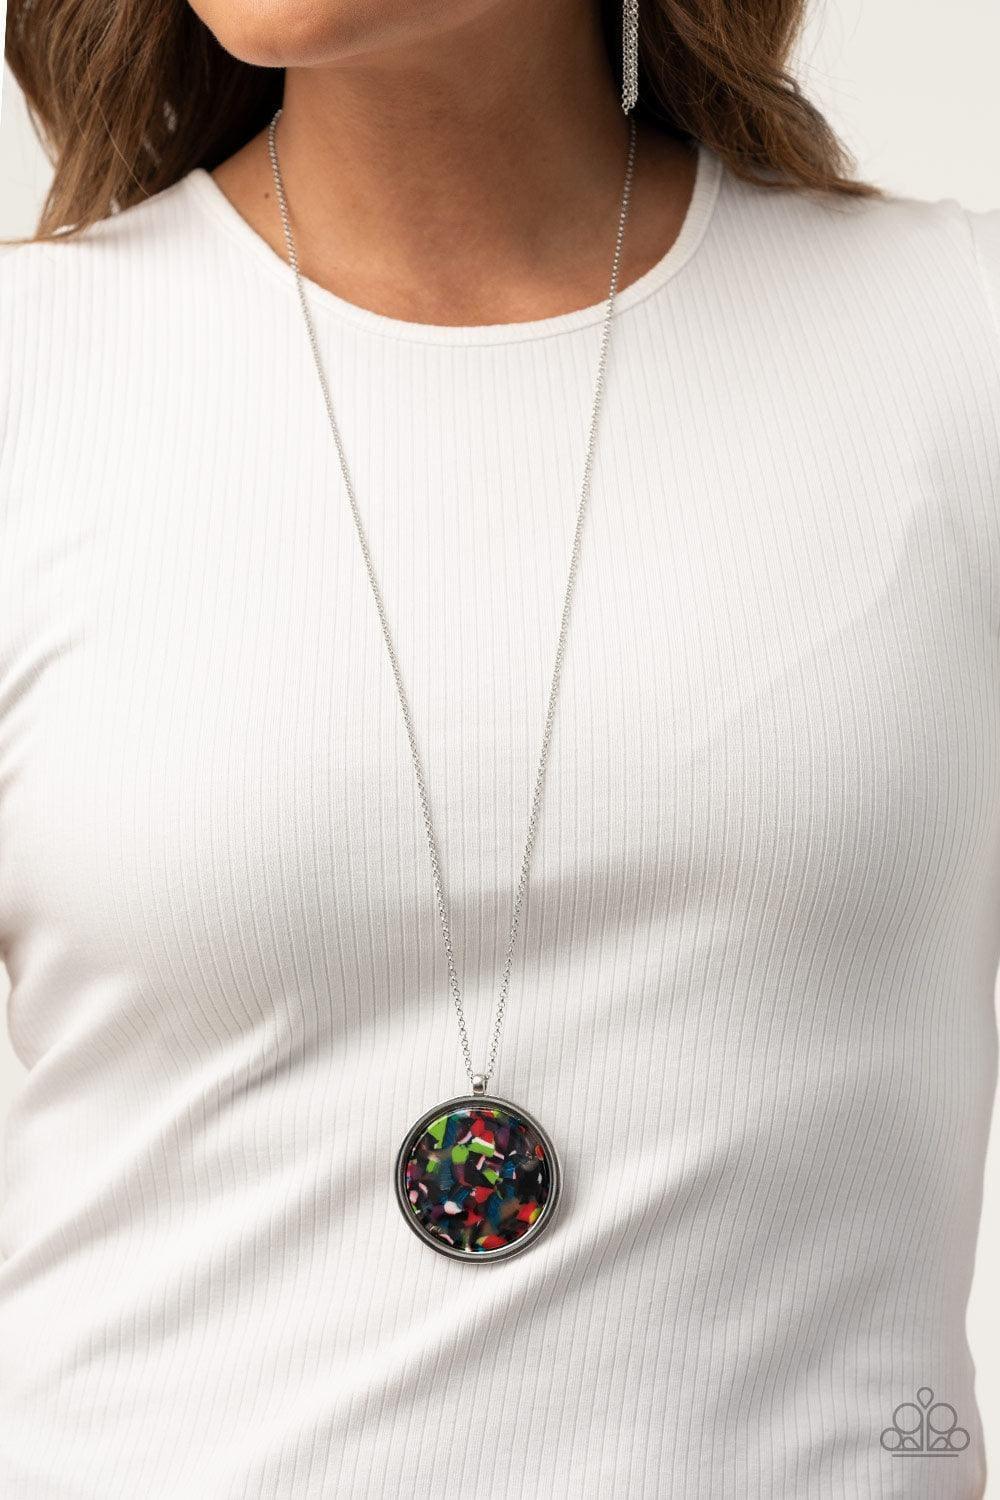 Paparazzi Accessories - Its Pop Secret! - Multicolor Necklace - Bling by JessieK